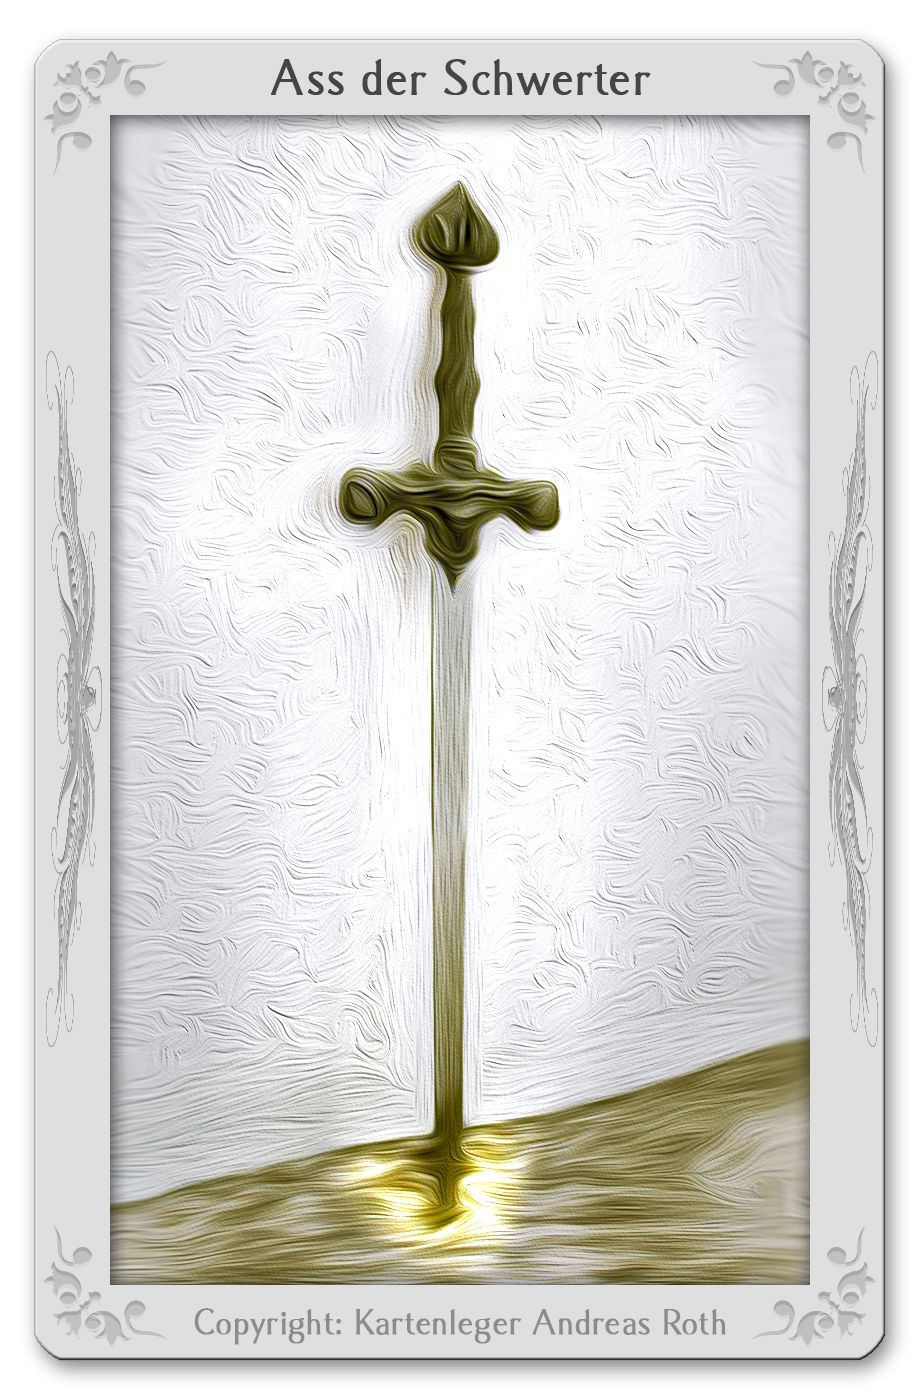 Tarotkarte Ass der Schwerter: Bedeutung, Kombinationen, Deutung